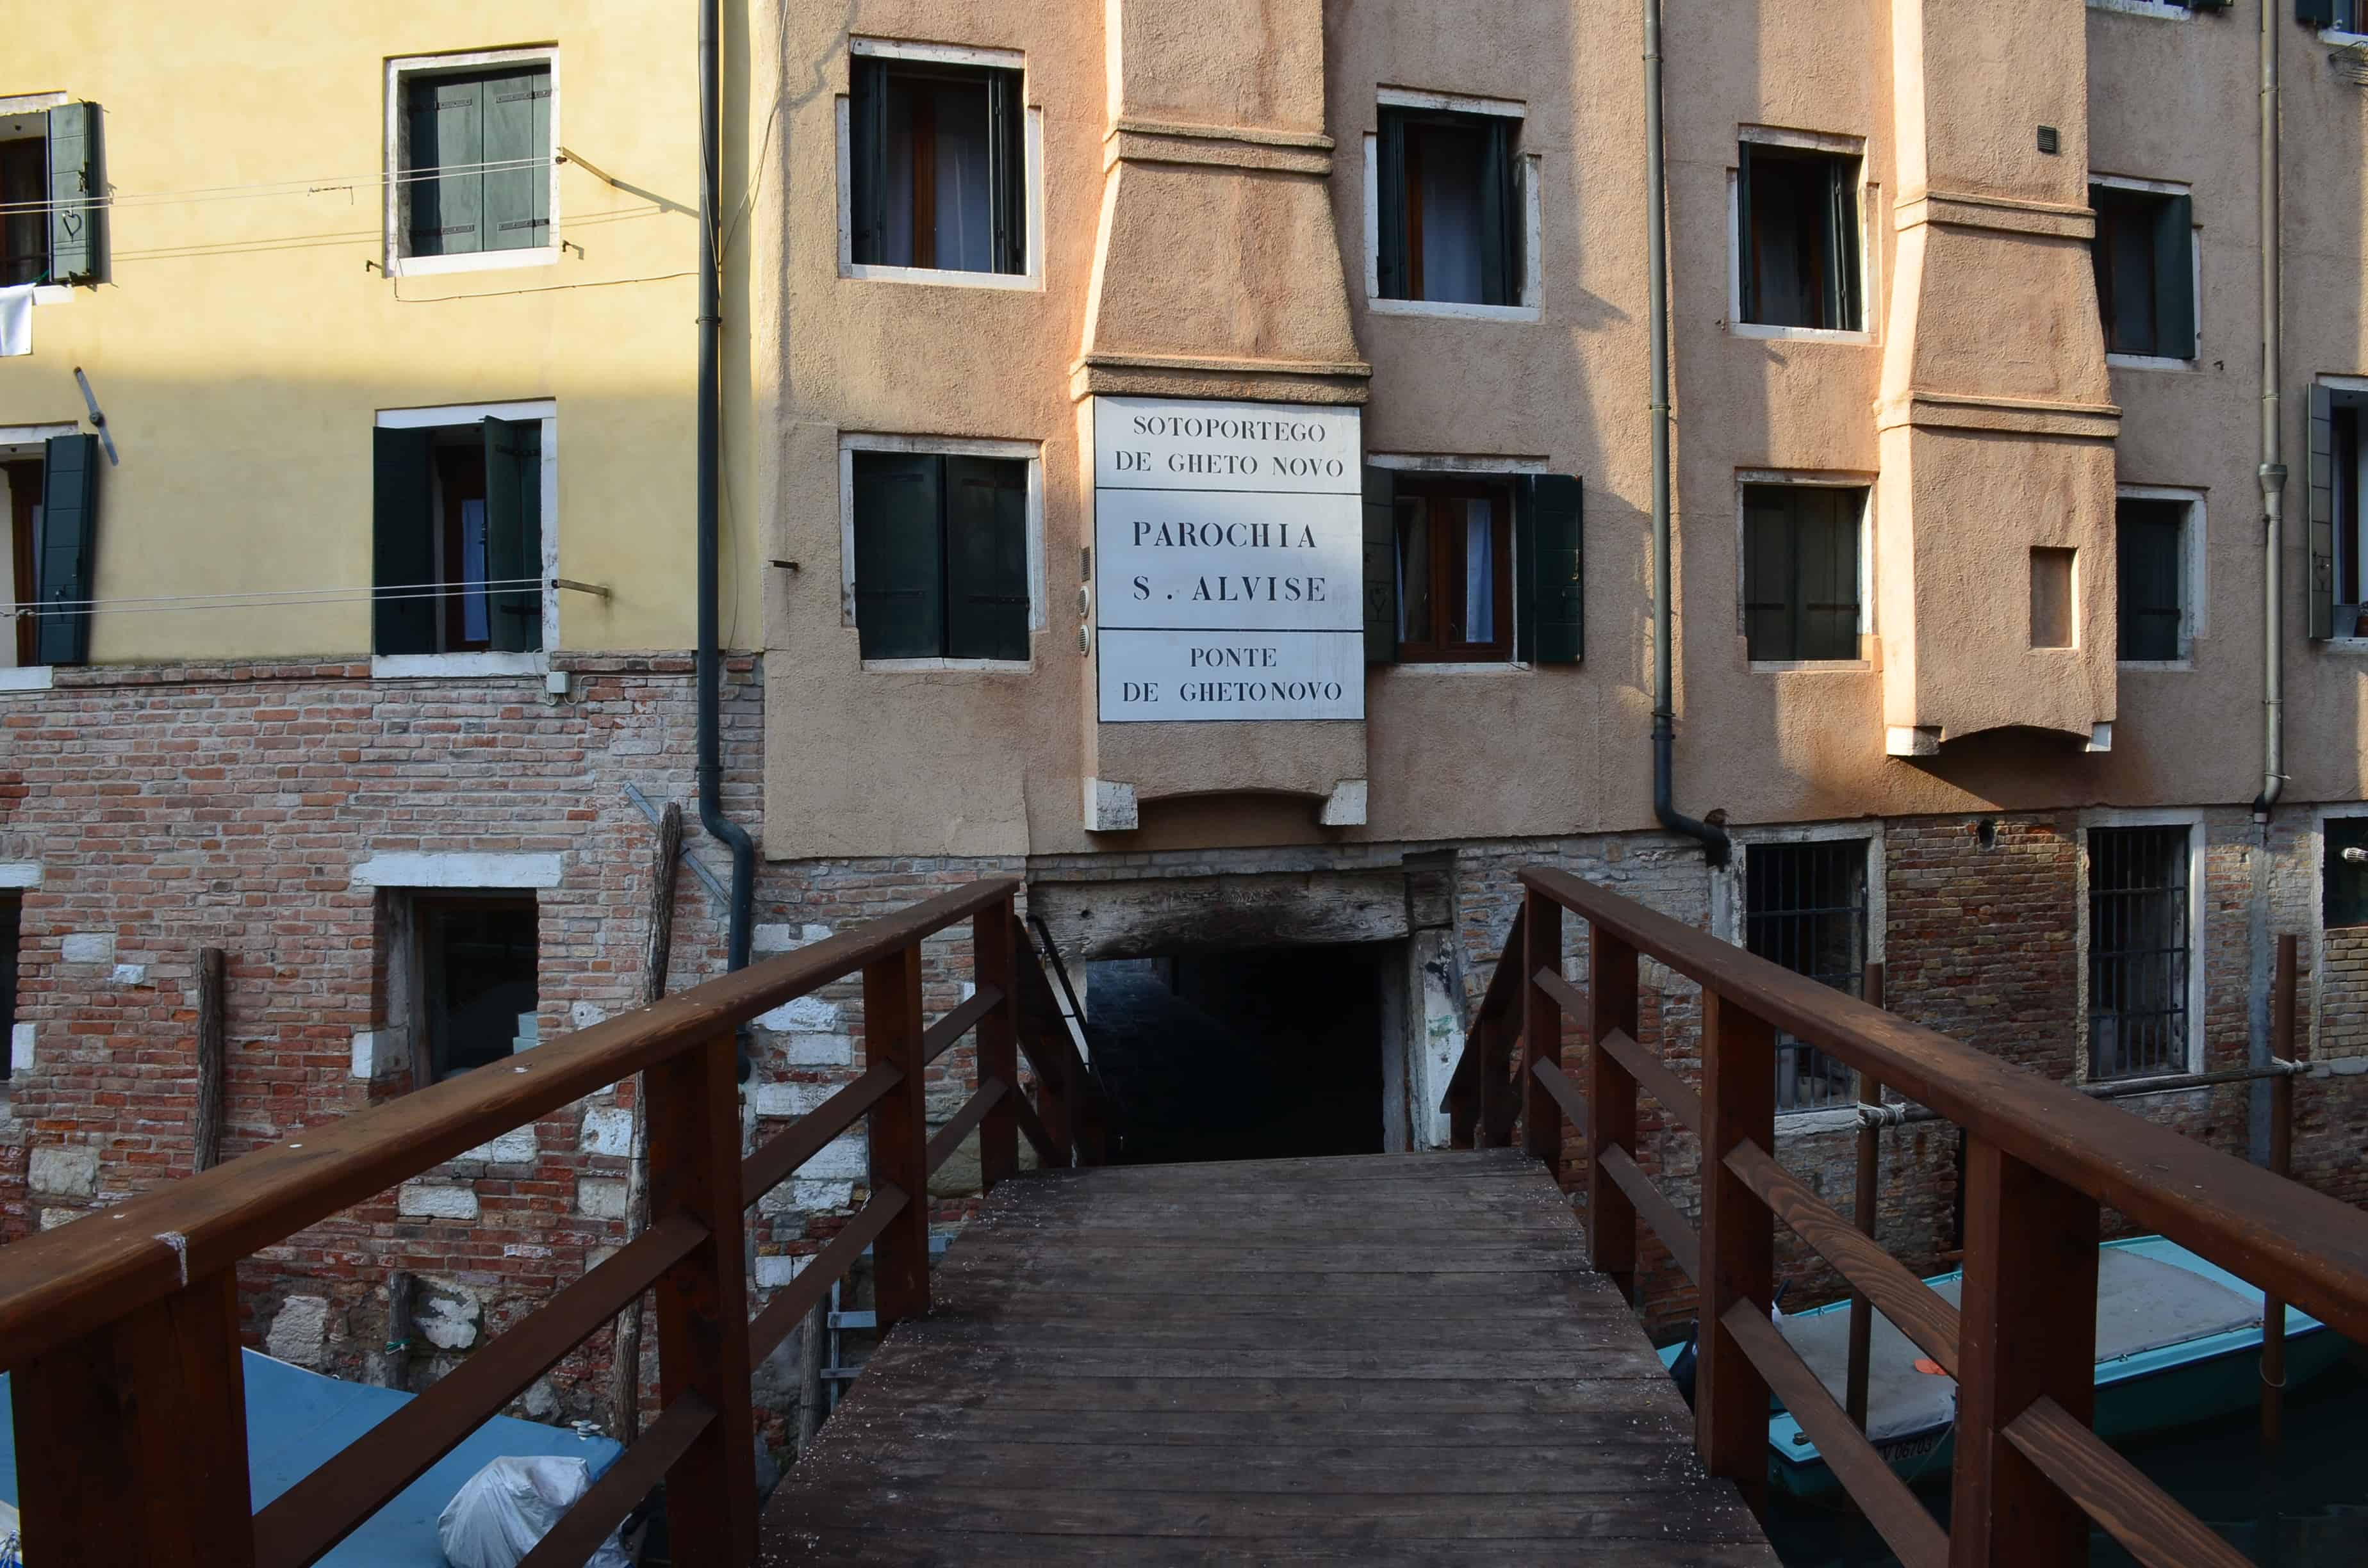 Sottoportego di Ghetto Nuovo in Venice, Italy